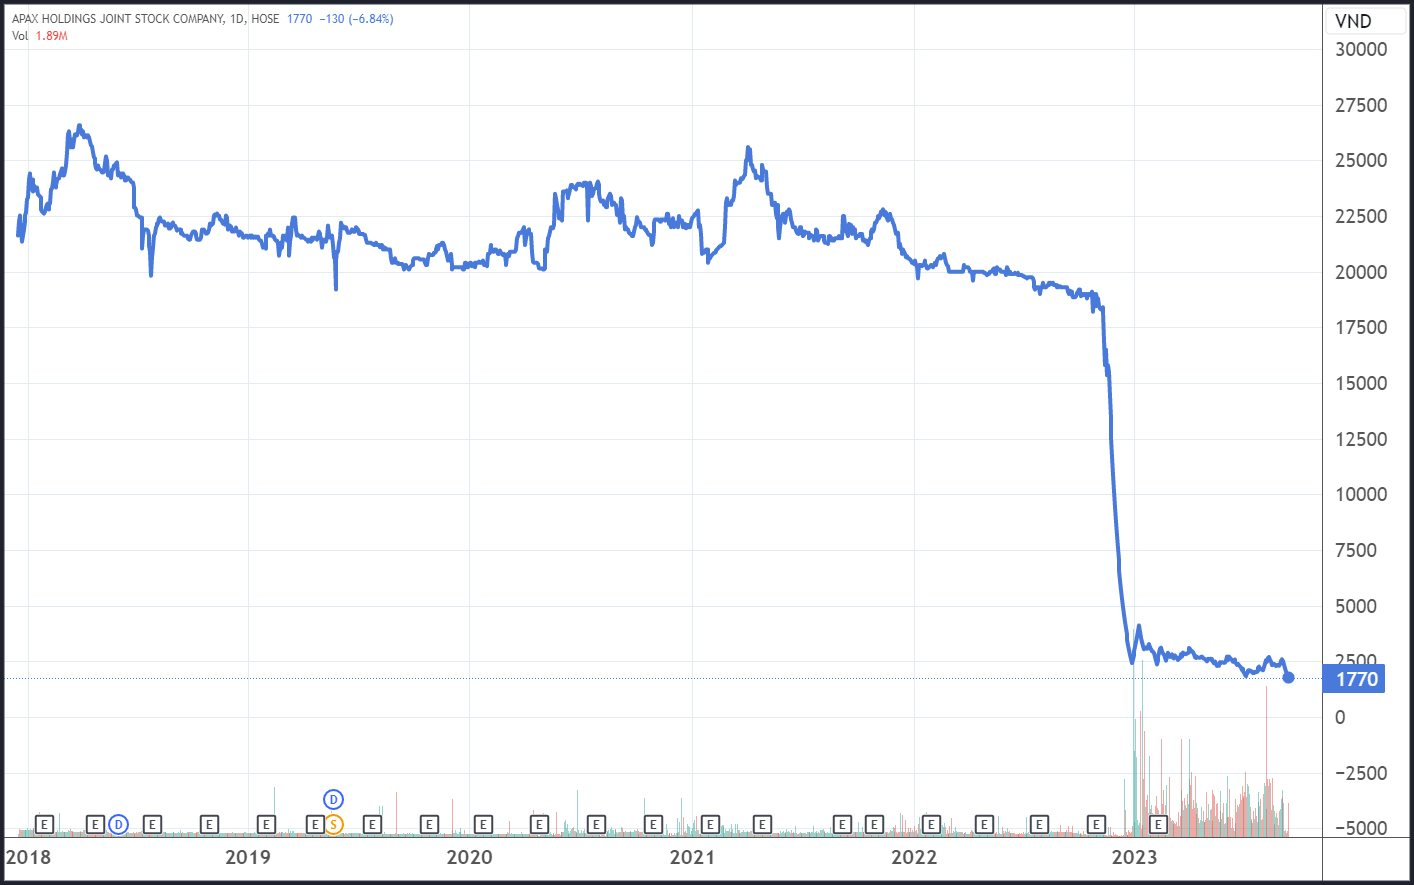 Cổ phiếu Apax Holdings của Shark Thủy bị hủy niêm yết bắt buộc trên HOSE - Ảnh 2.